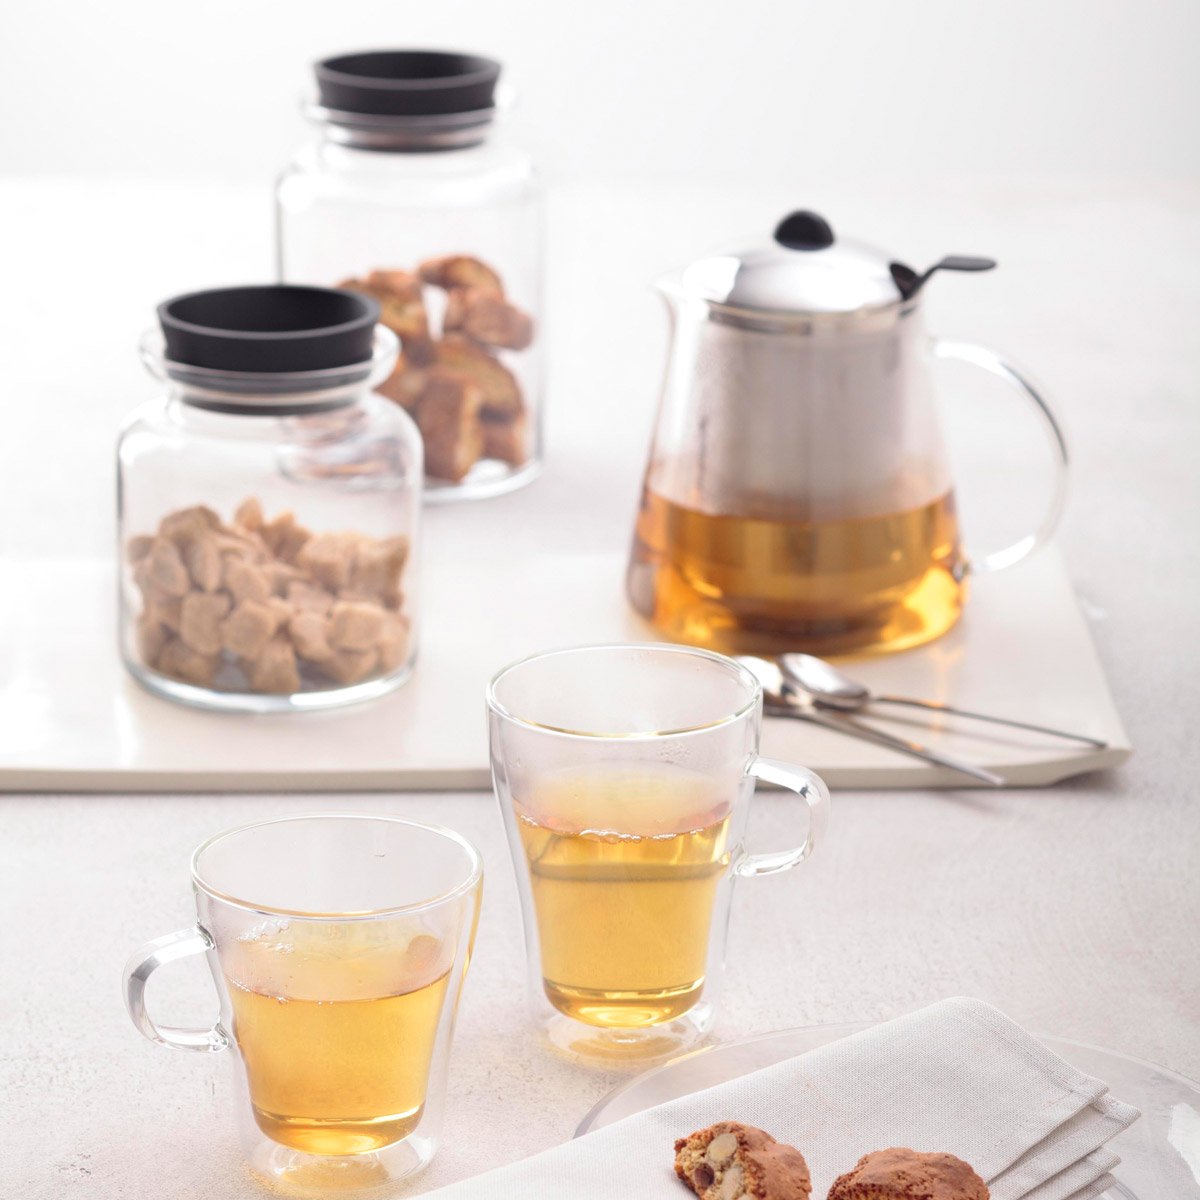 Leonardo TISANA Teapot in Glass with Integrated Strainer 1.6 Litre